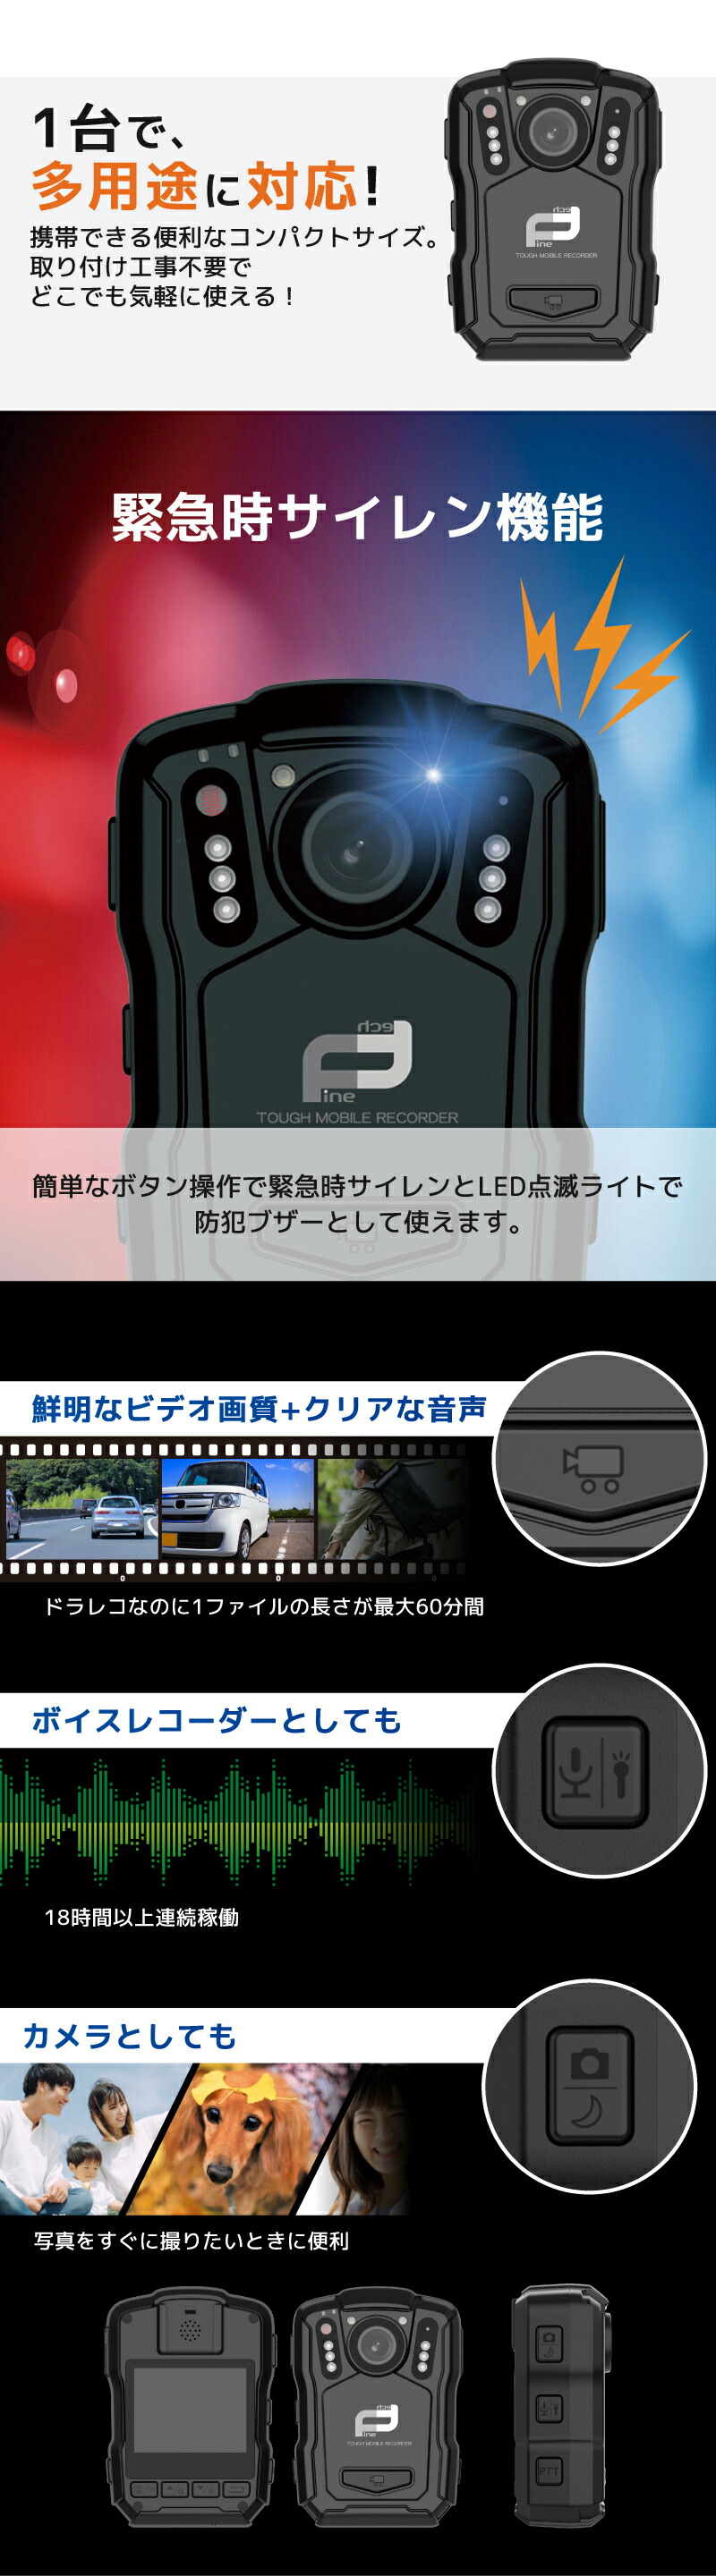 モバイルレコーダー FT-V6【64GB】14